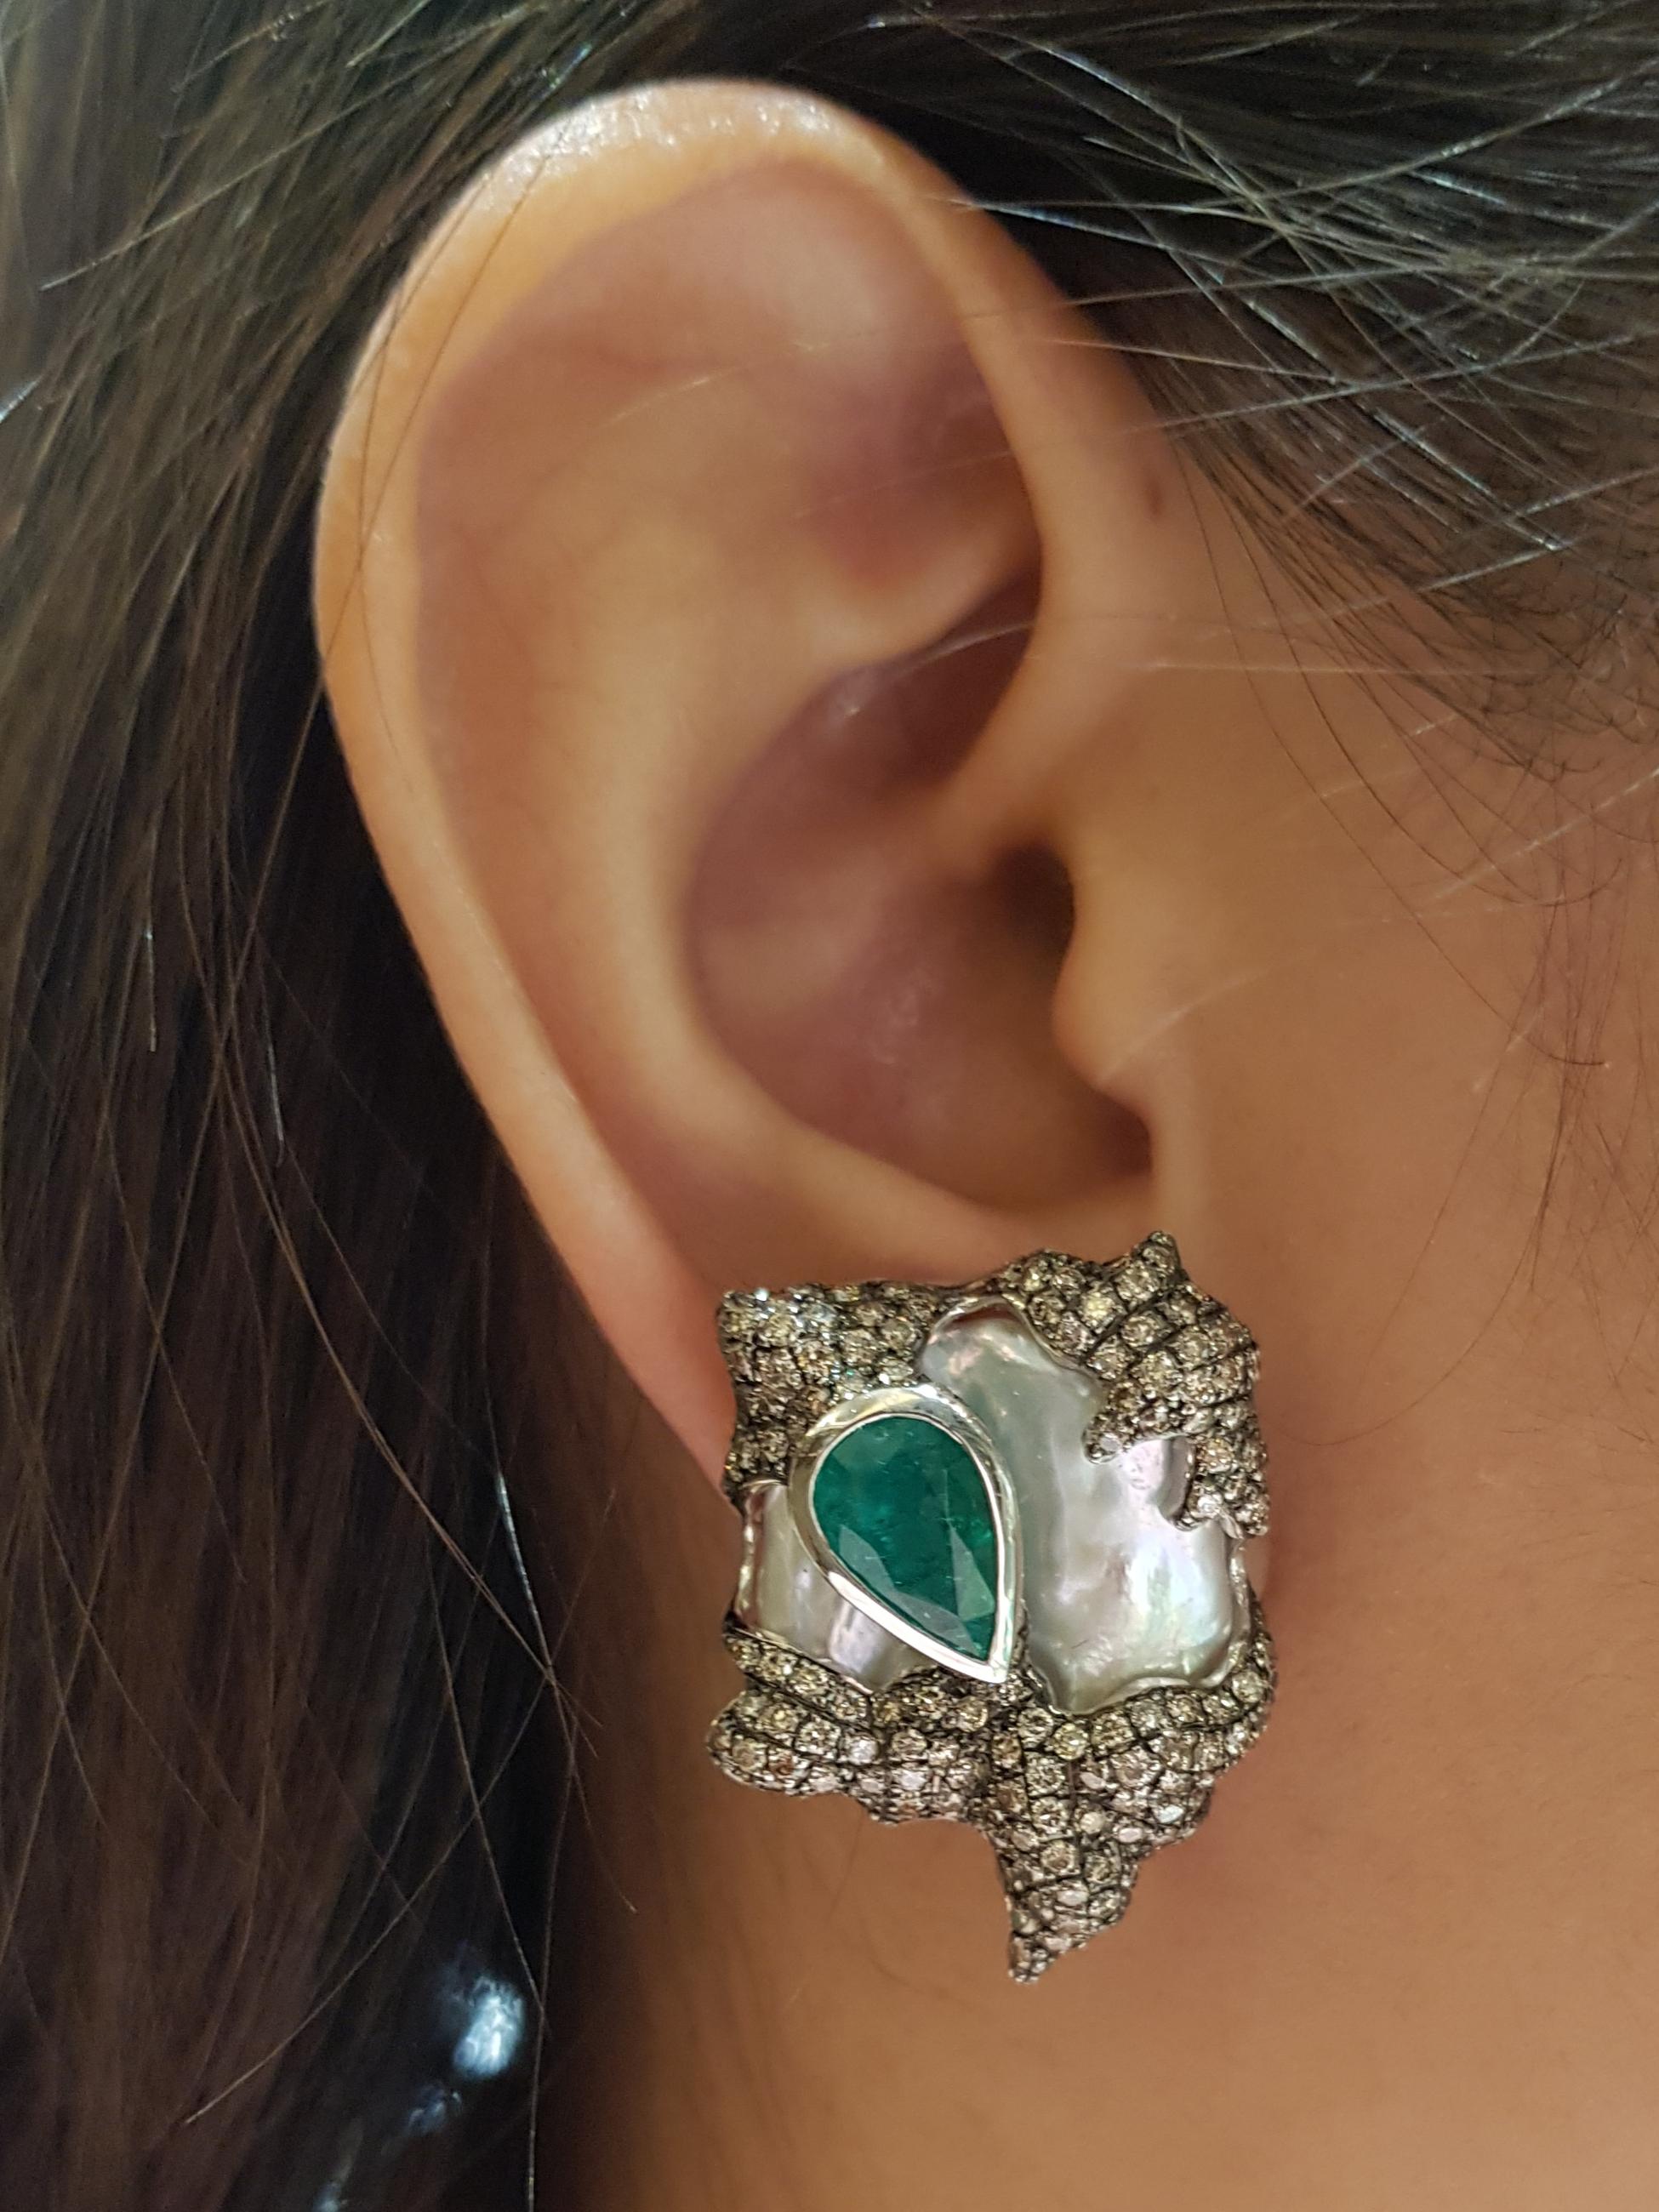 Perle, Smaragd 4,27 Karat und brauner Diamant 4,33 Karat Ohrringe in 18 Karat Weißgoldfassung

Breite:  2.5 cm 
Länge:  3.5 cm
Gesamtgewicht: 31,23 Gramm

